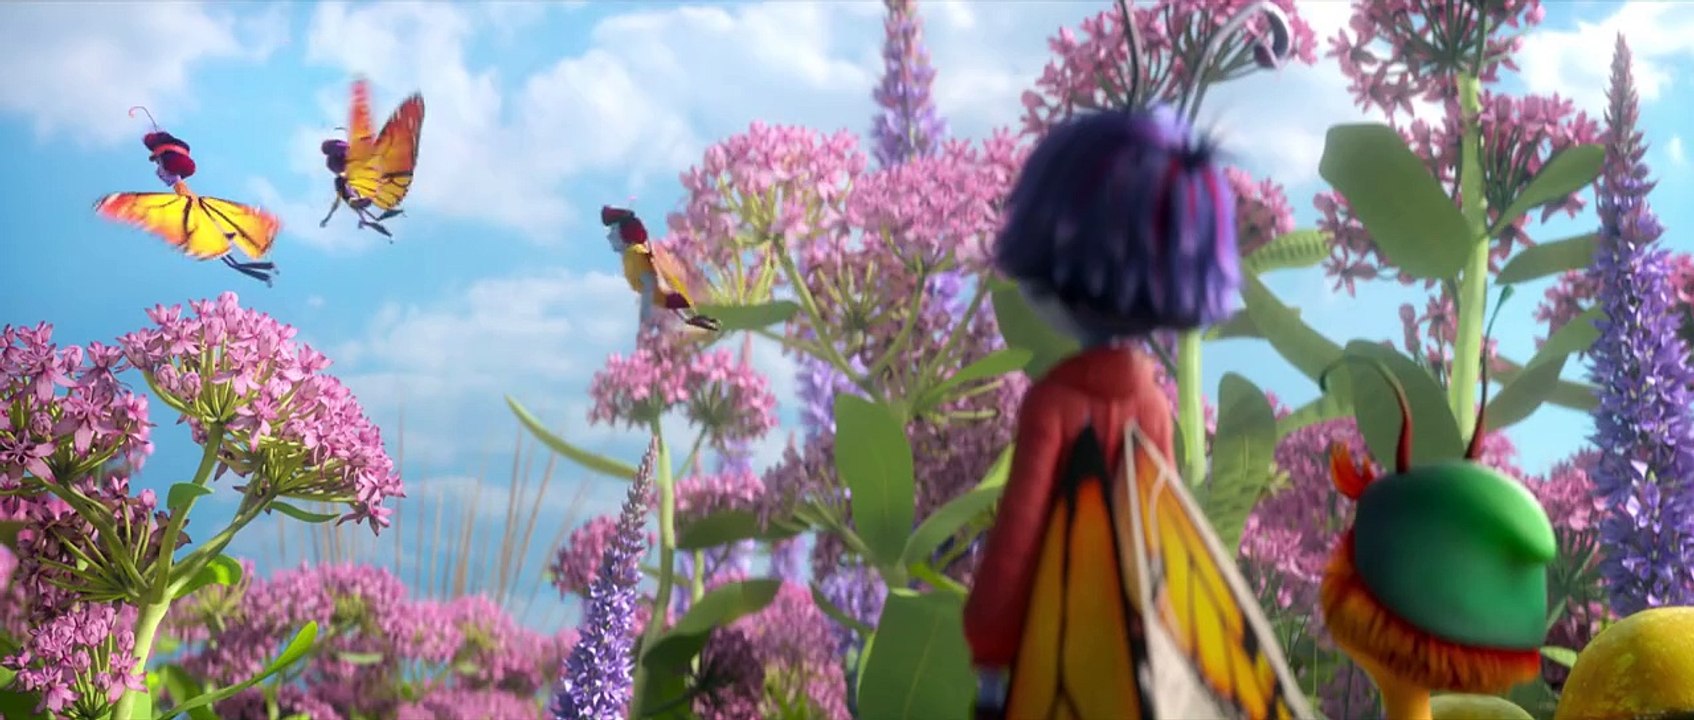 Butterfly Tale - Ein Abenteuer liegt in der Luft Trailer DF